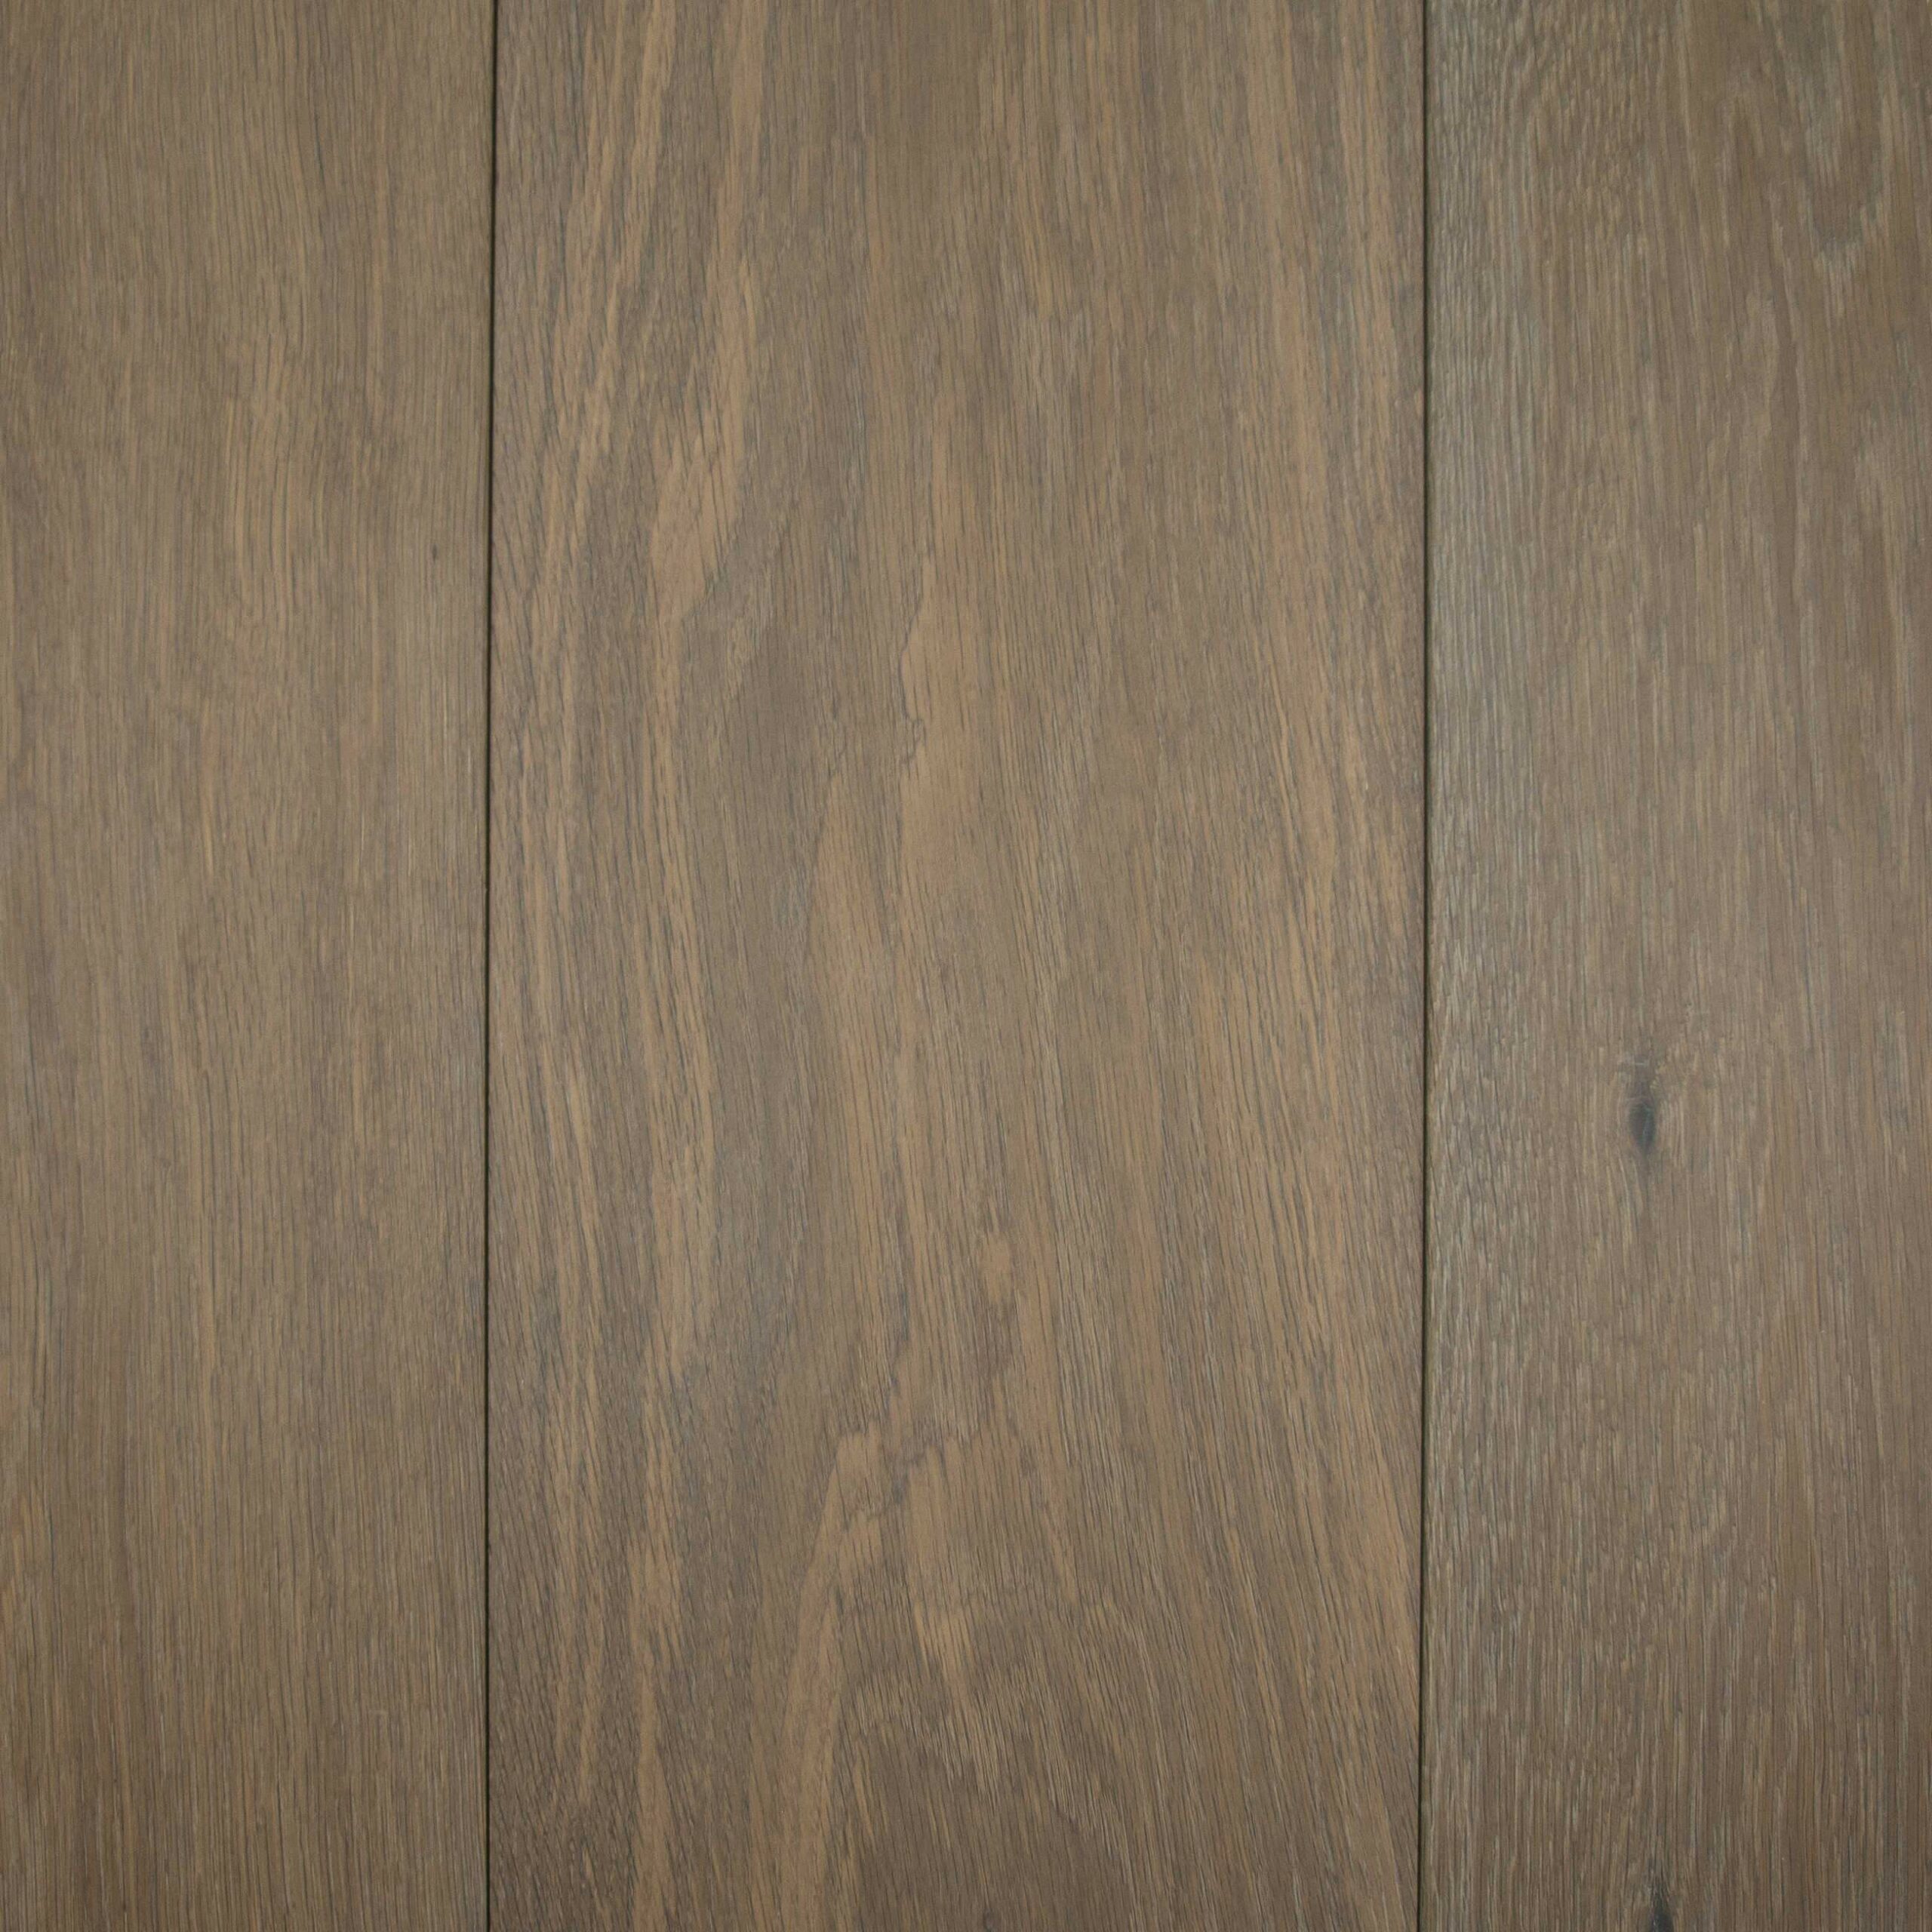 Brushed Fumed Limed UV Oiled Oak Flooring